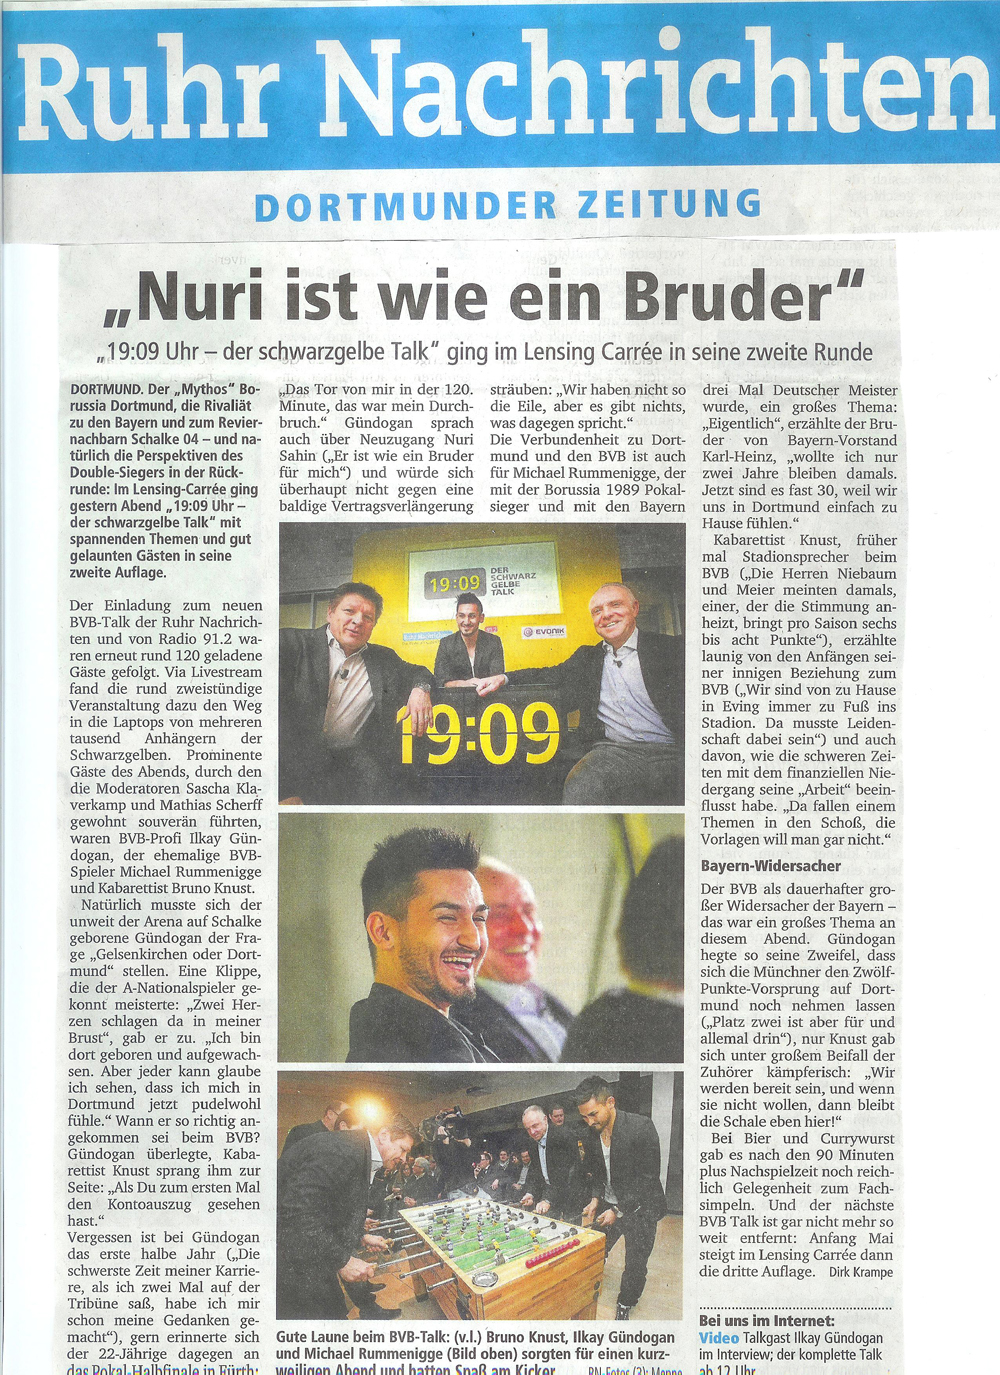 Artikel in der Ruhr Nachrichten vom 21.01.2013 anlässlich des Auftritts bei „19:09 Uhr – Der schwarzgelbe Talk“